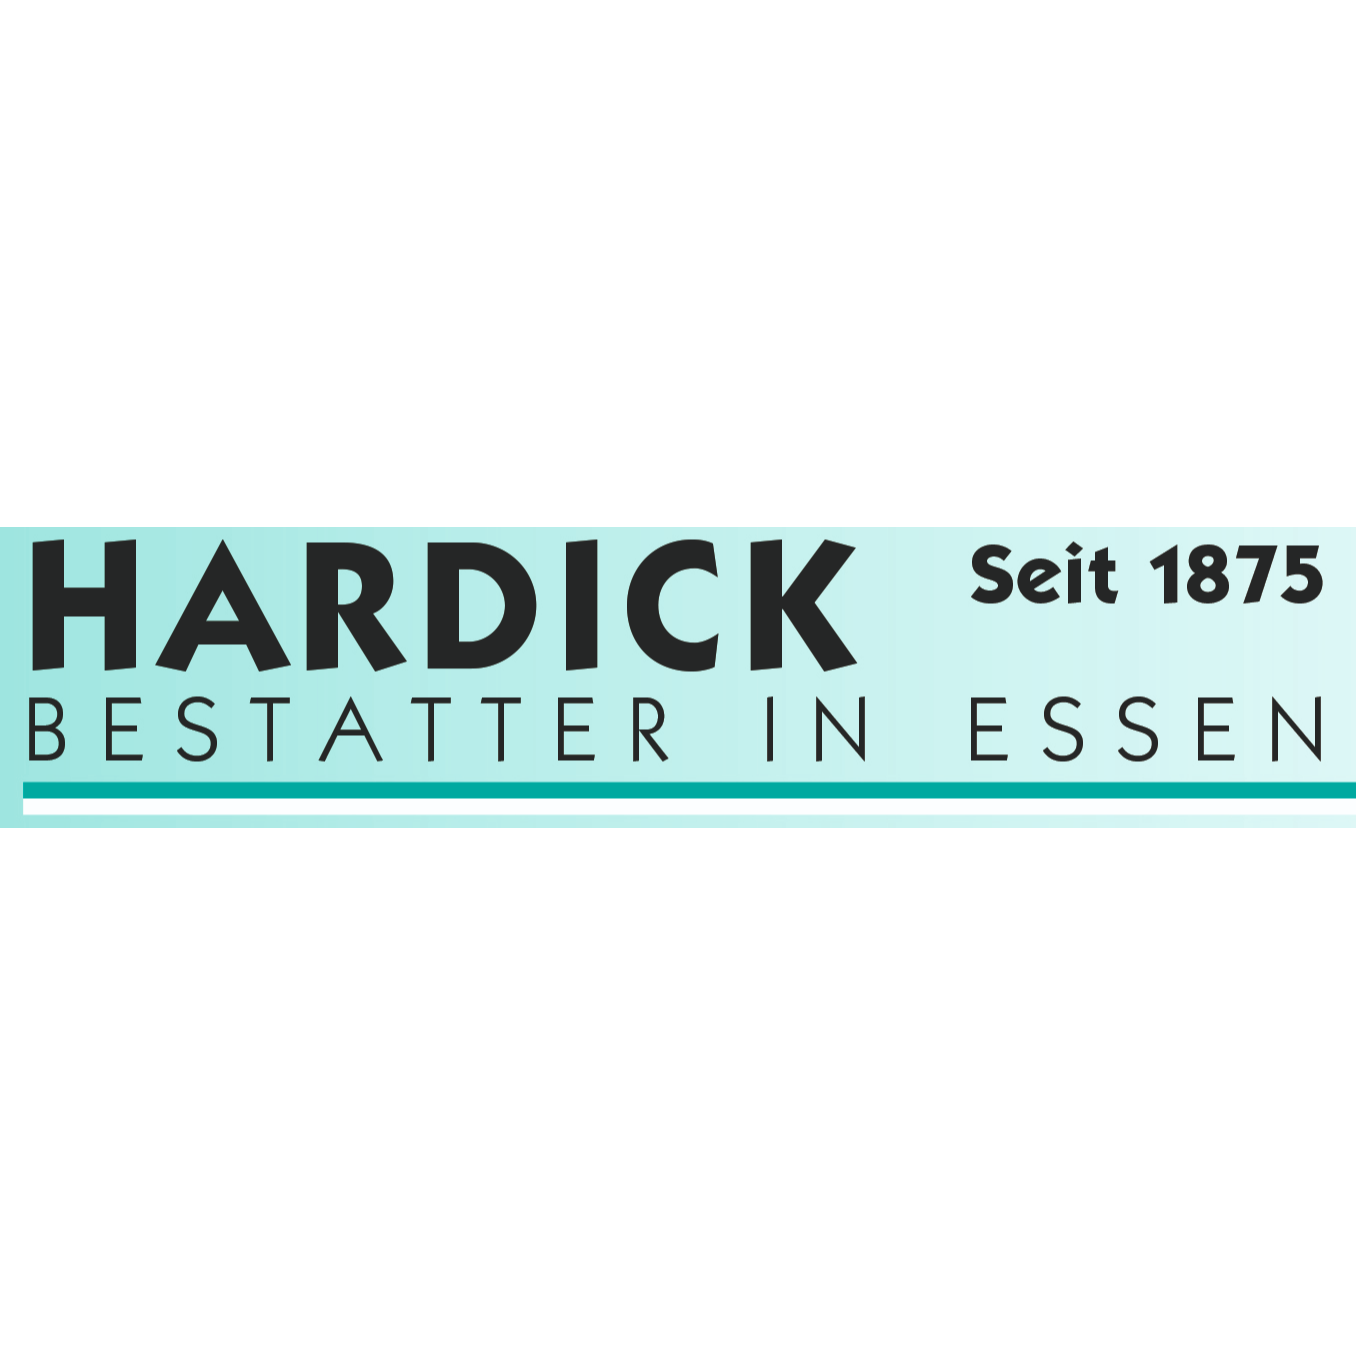 Hardick H.F. Bestatter in Essen GmbH in Essen - Logo